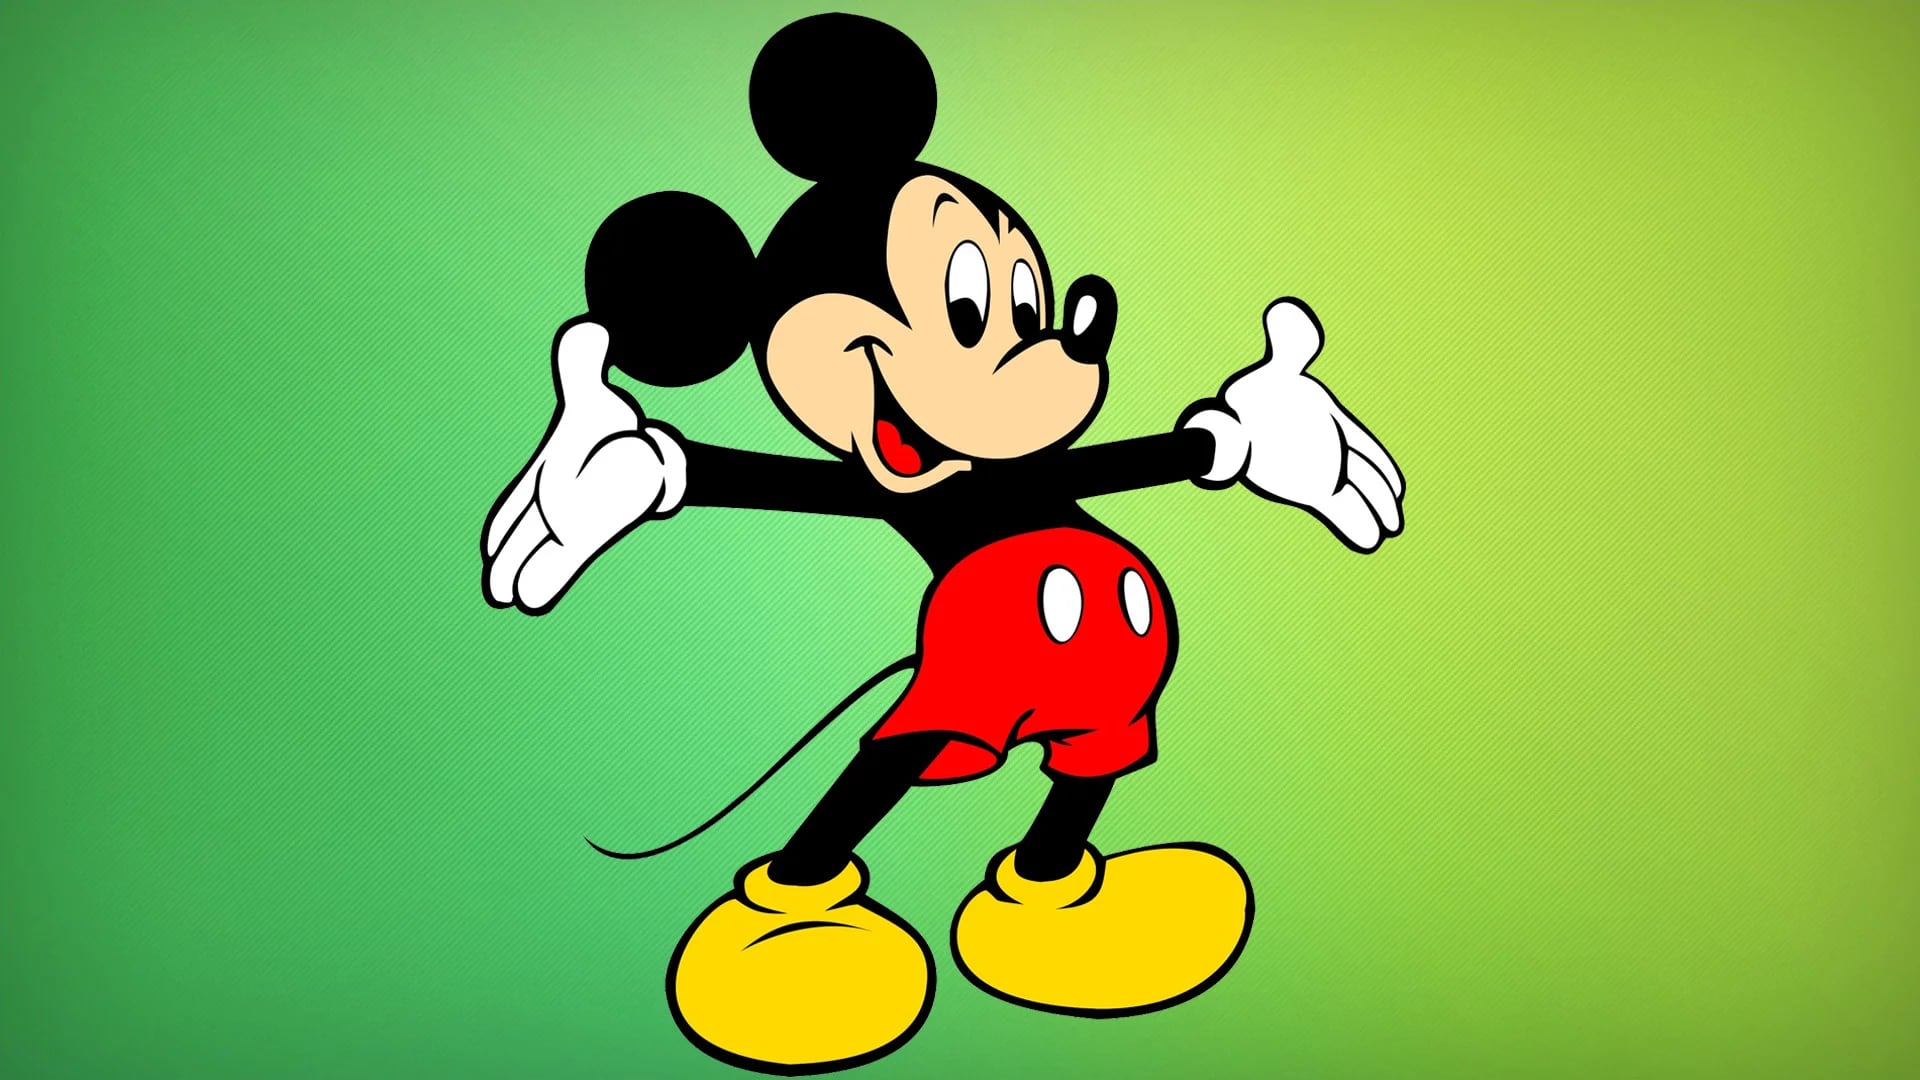 Sobre la gloria de Mickey Mouse: cumple 90 años y aún promete felicidad -  Infobae